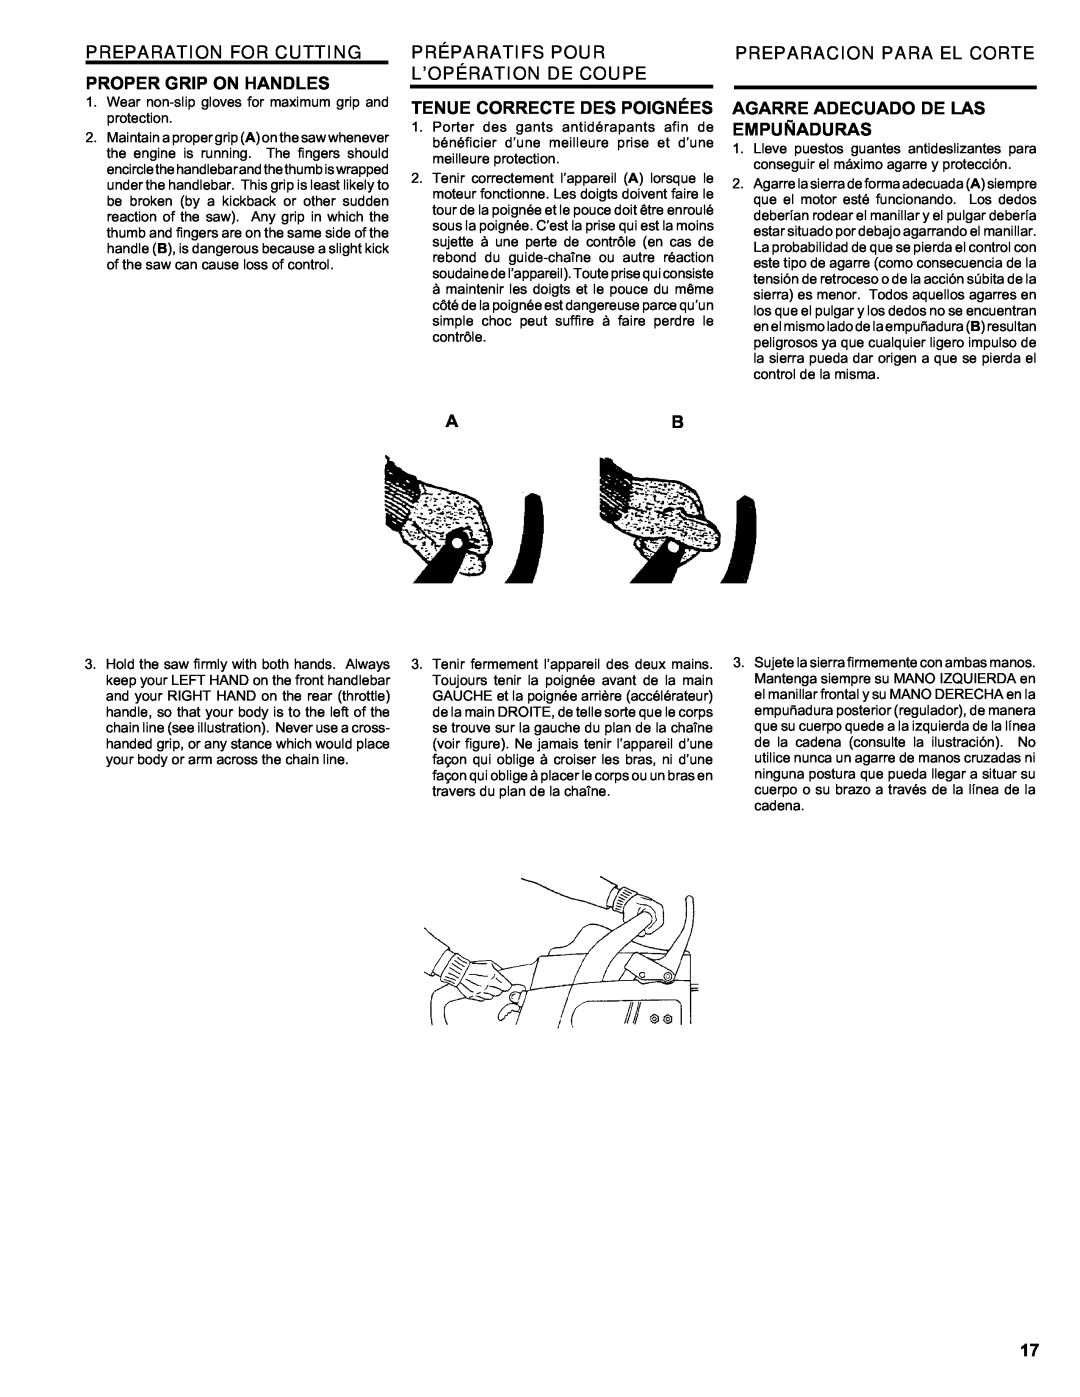 Homelite ut 10910 manual Preparation For Cutting, Proper Grip On Handles, Préparatifs Pour, Preparacion Para El Corte 